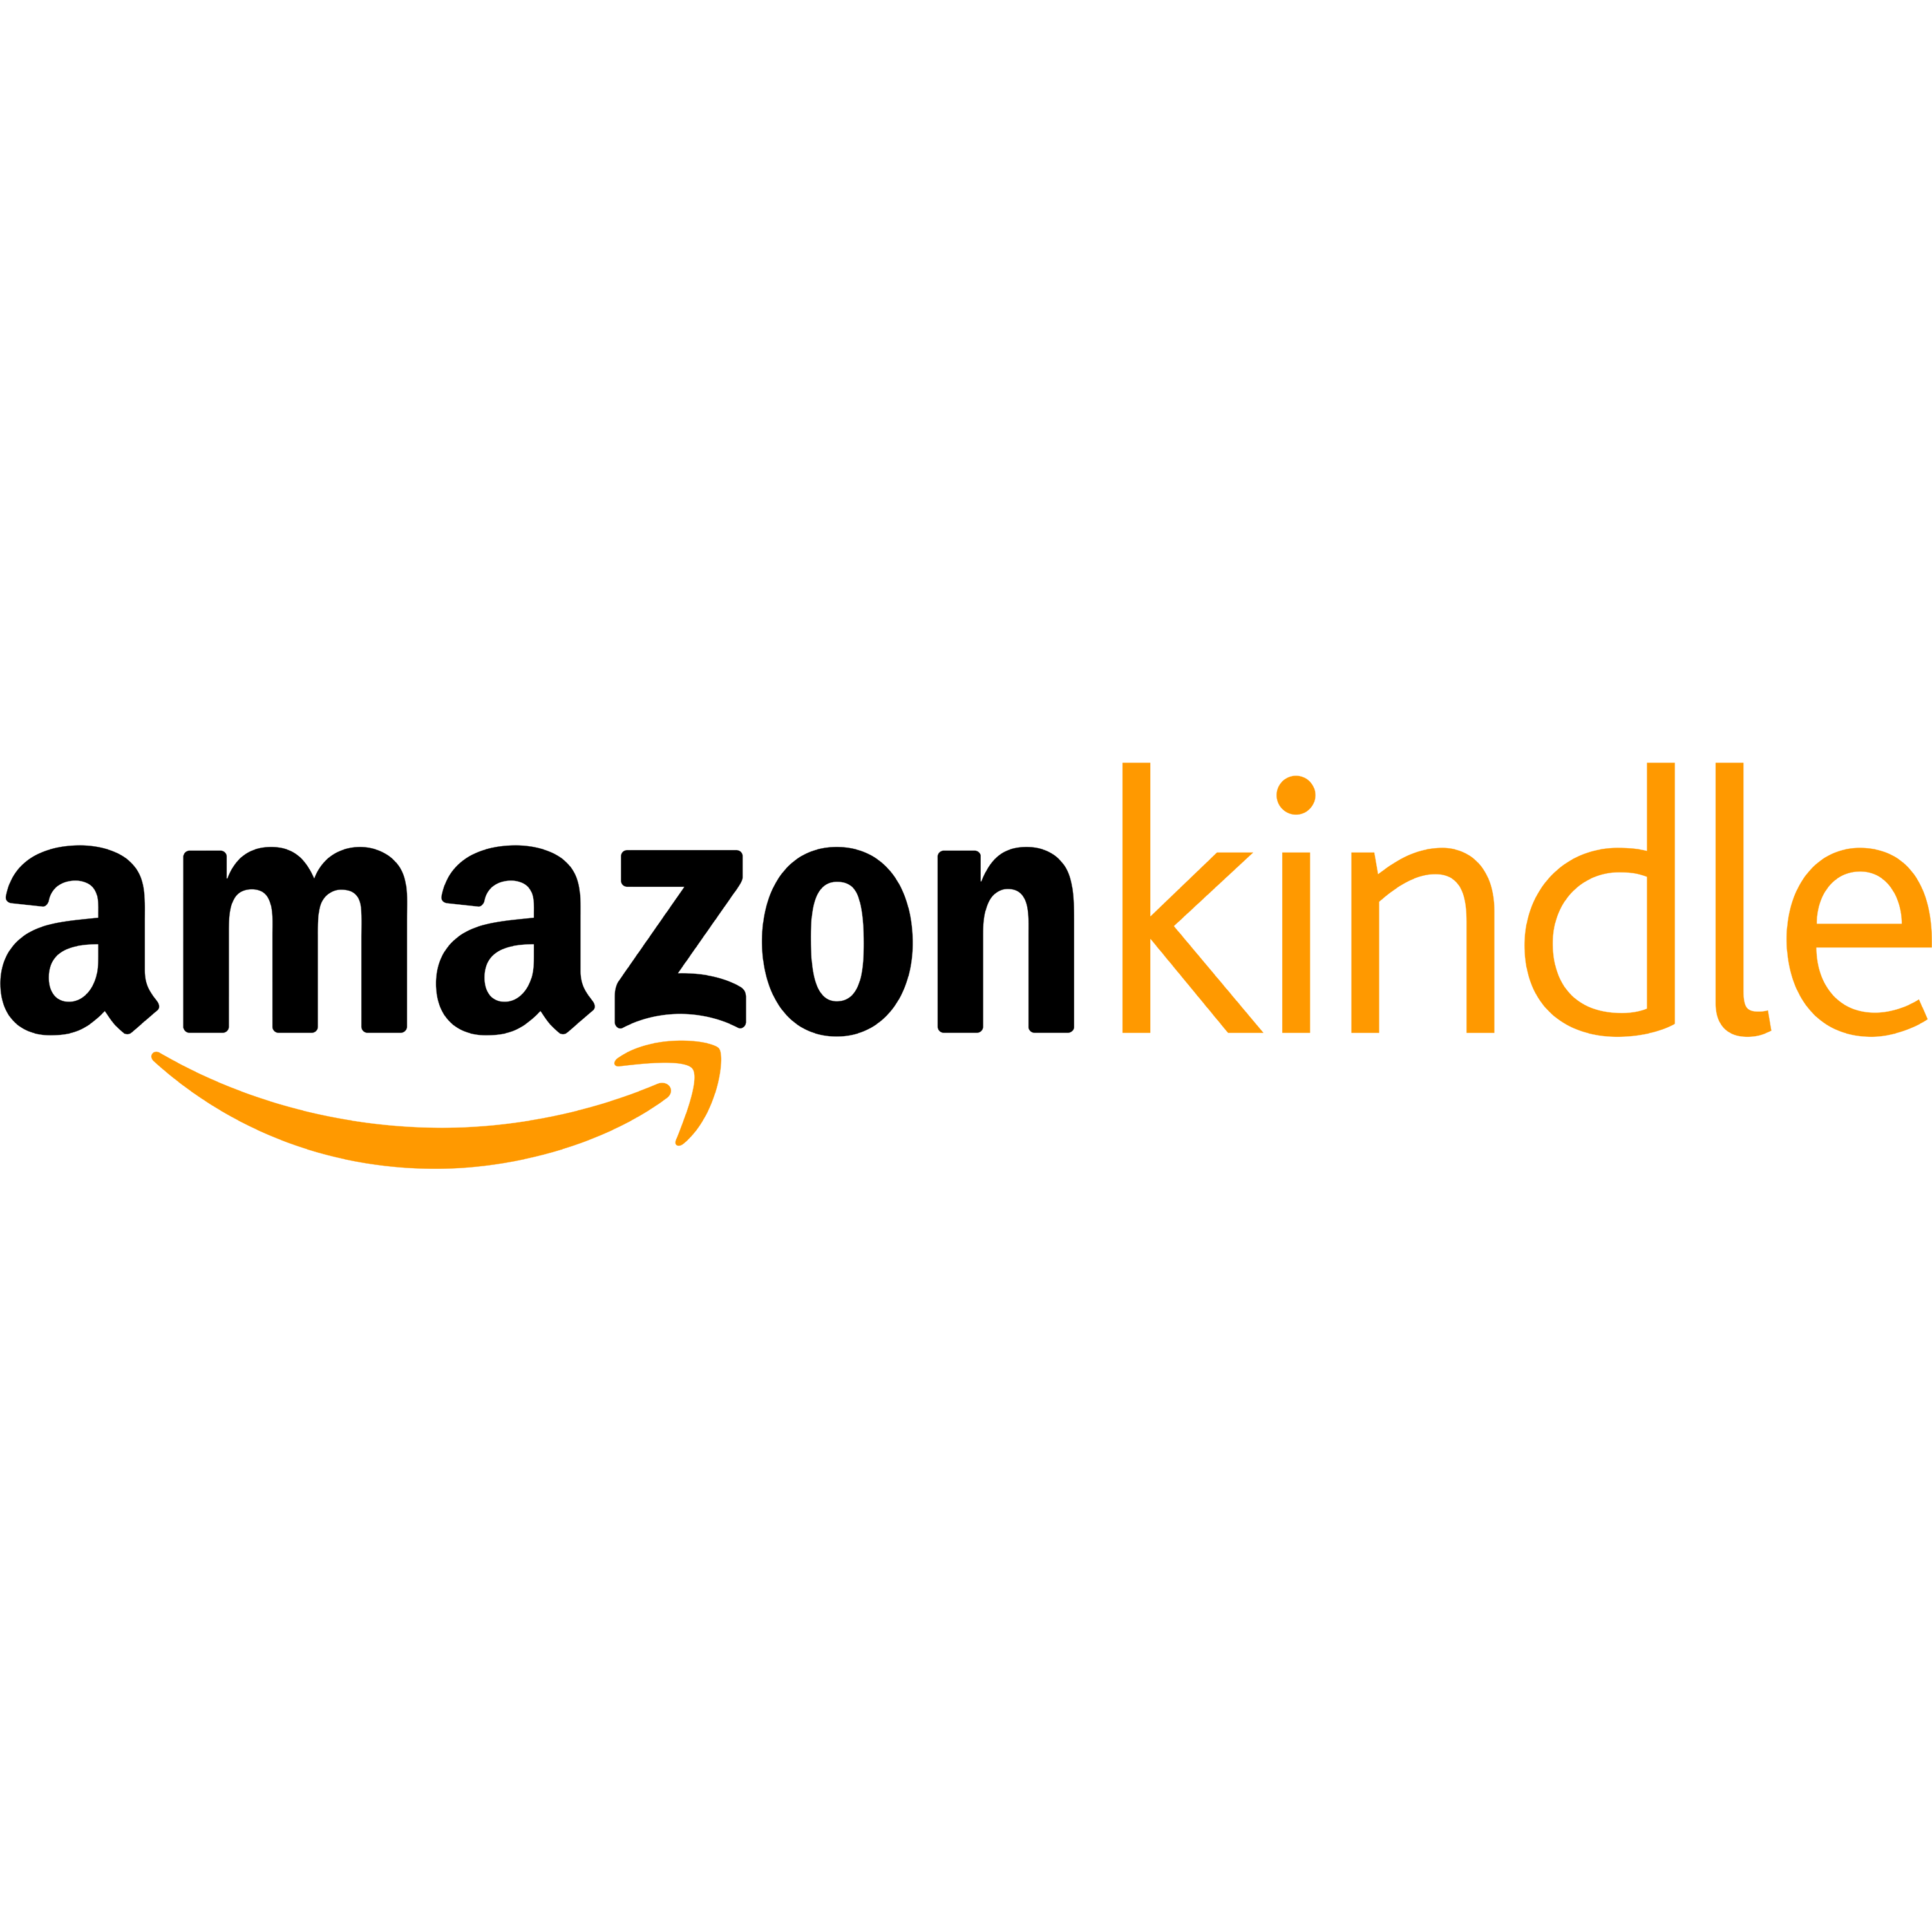 Amazon Kindle Logo Transparent Image